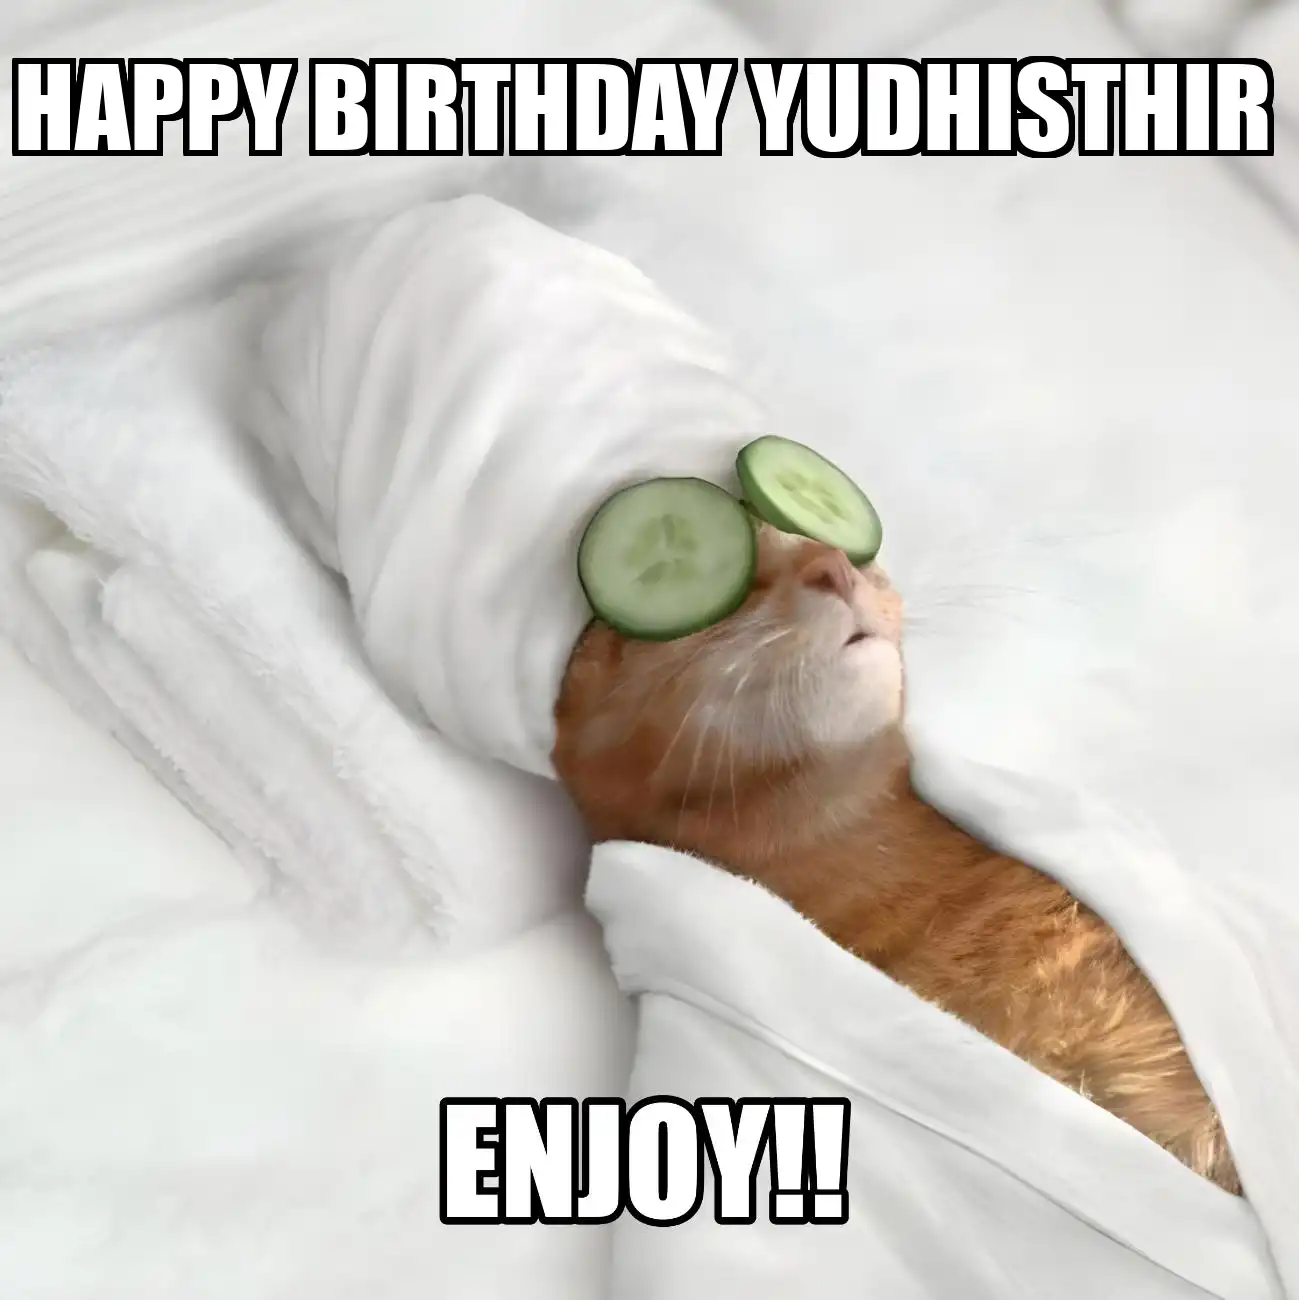 Happy Birthday Yudhisthir Enjoy Cat Meme